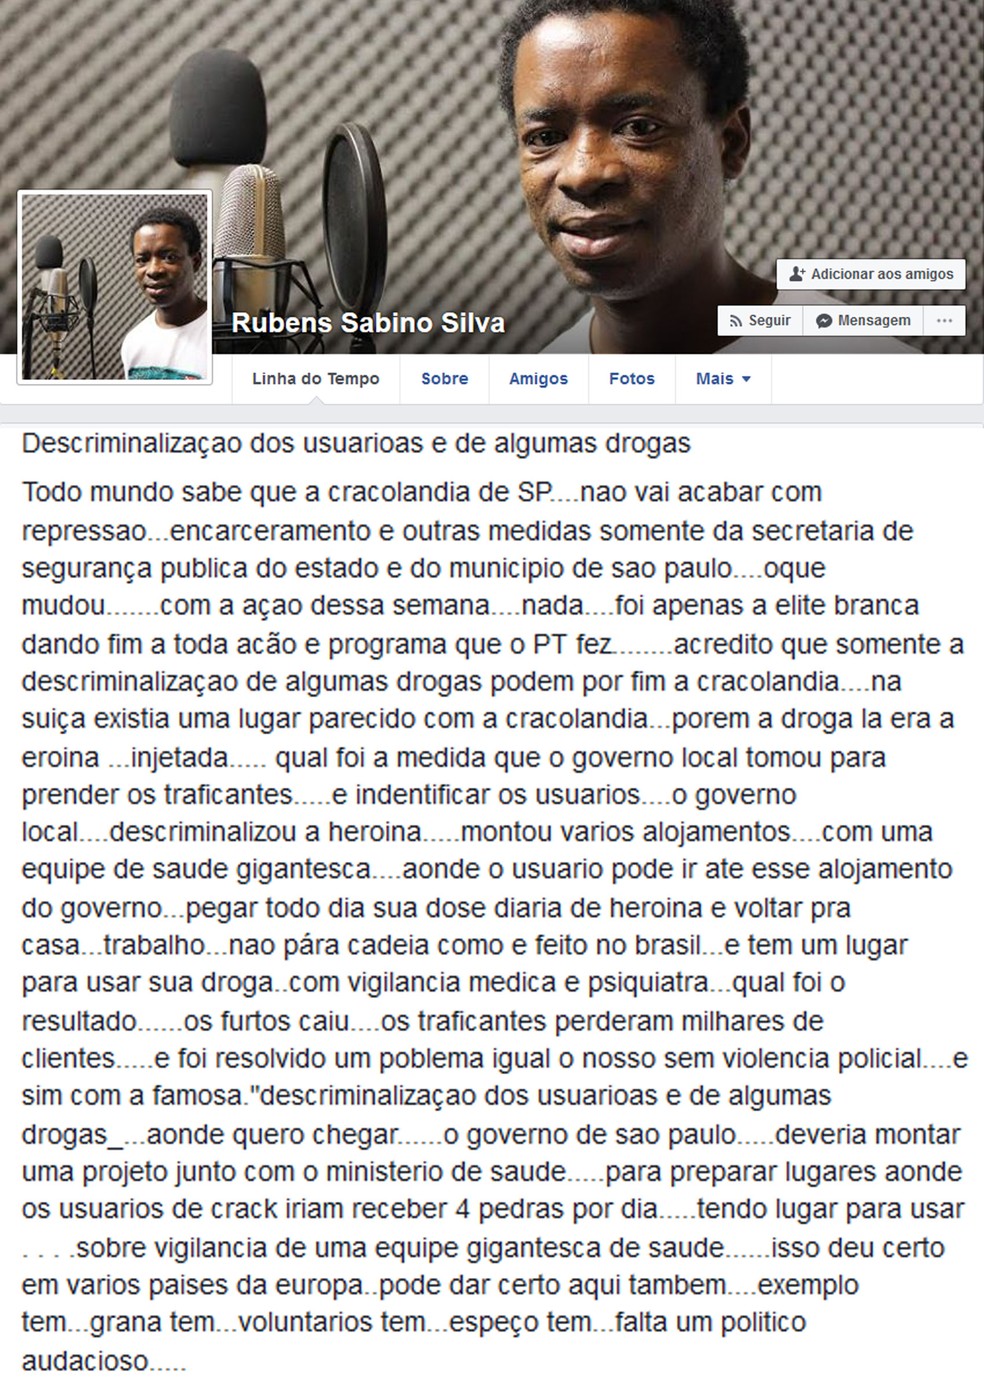 Rubens Sabino postou em seu perfil no Facebook a opinião sobre a Cracolândia (Foto: Reprodução/Facebook/Rubens Sabino Silva)